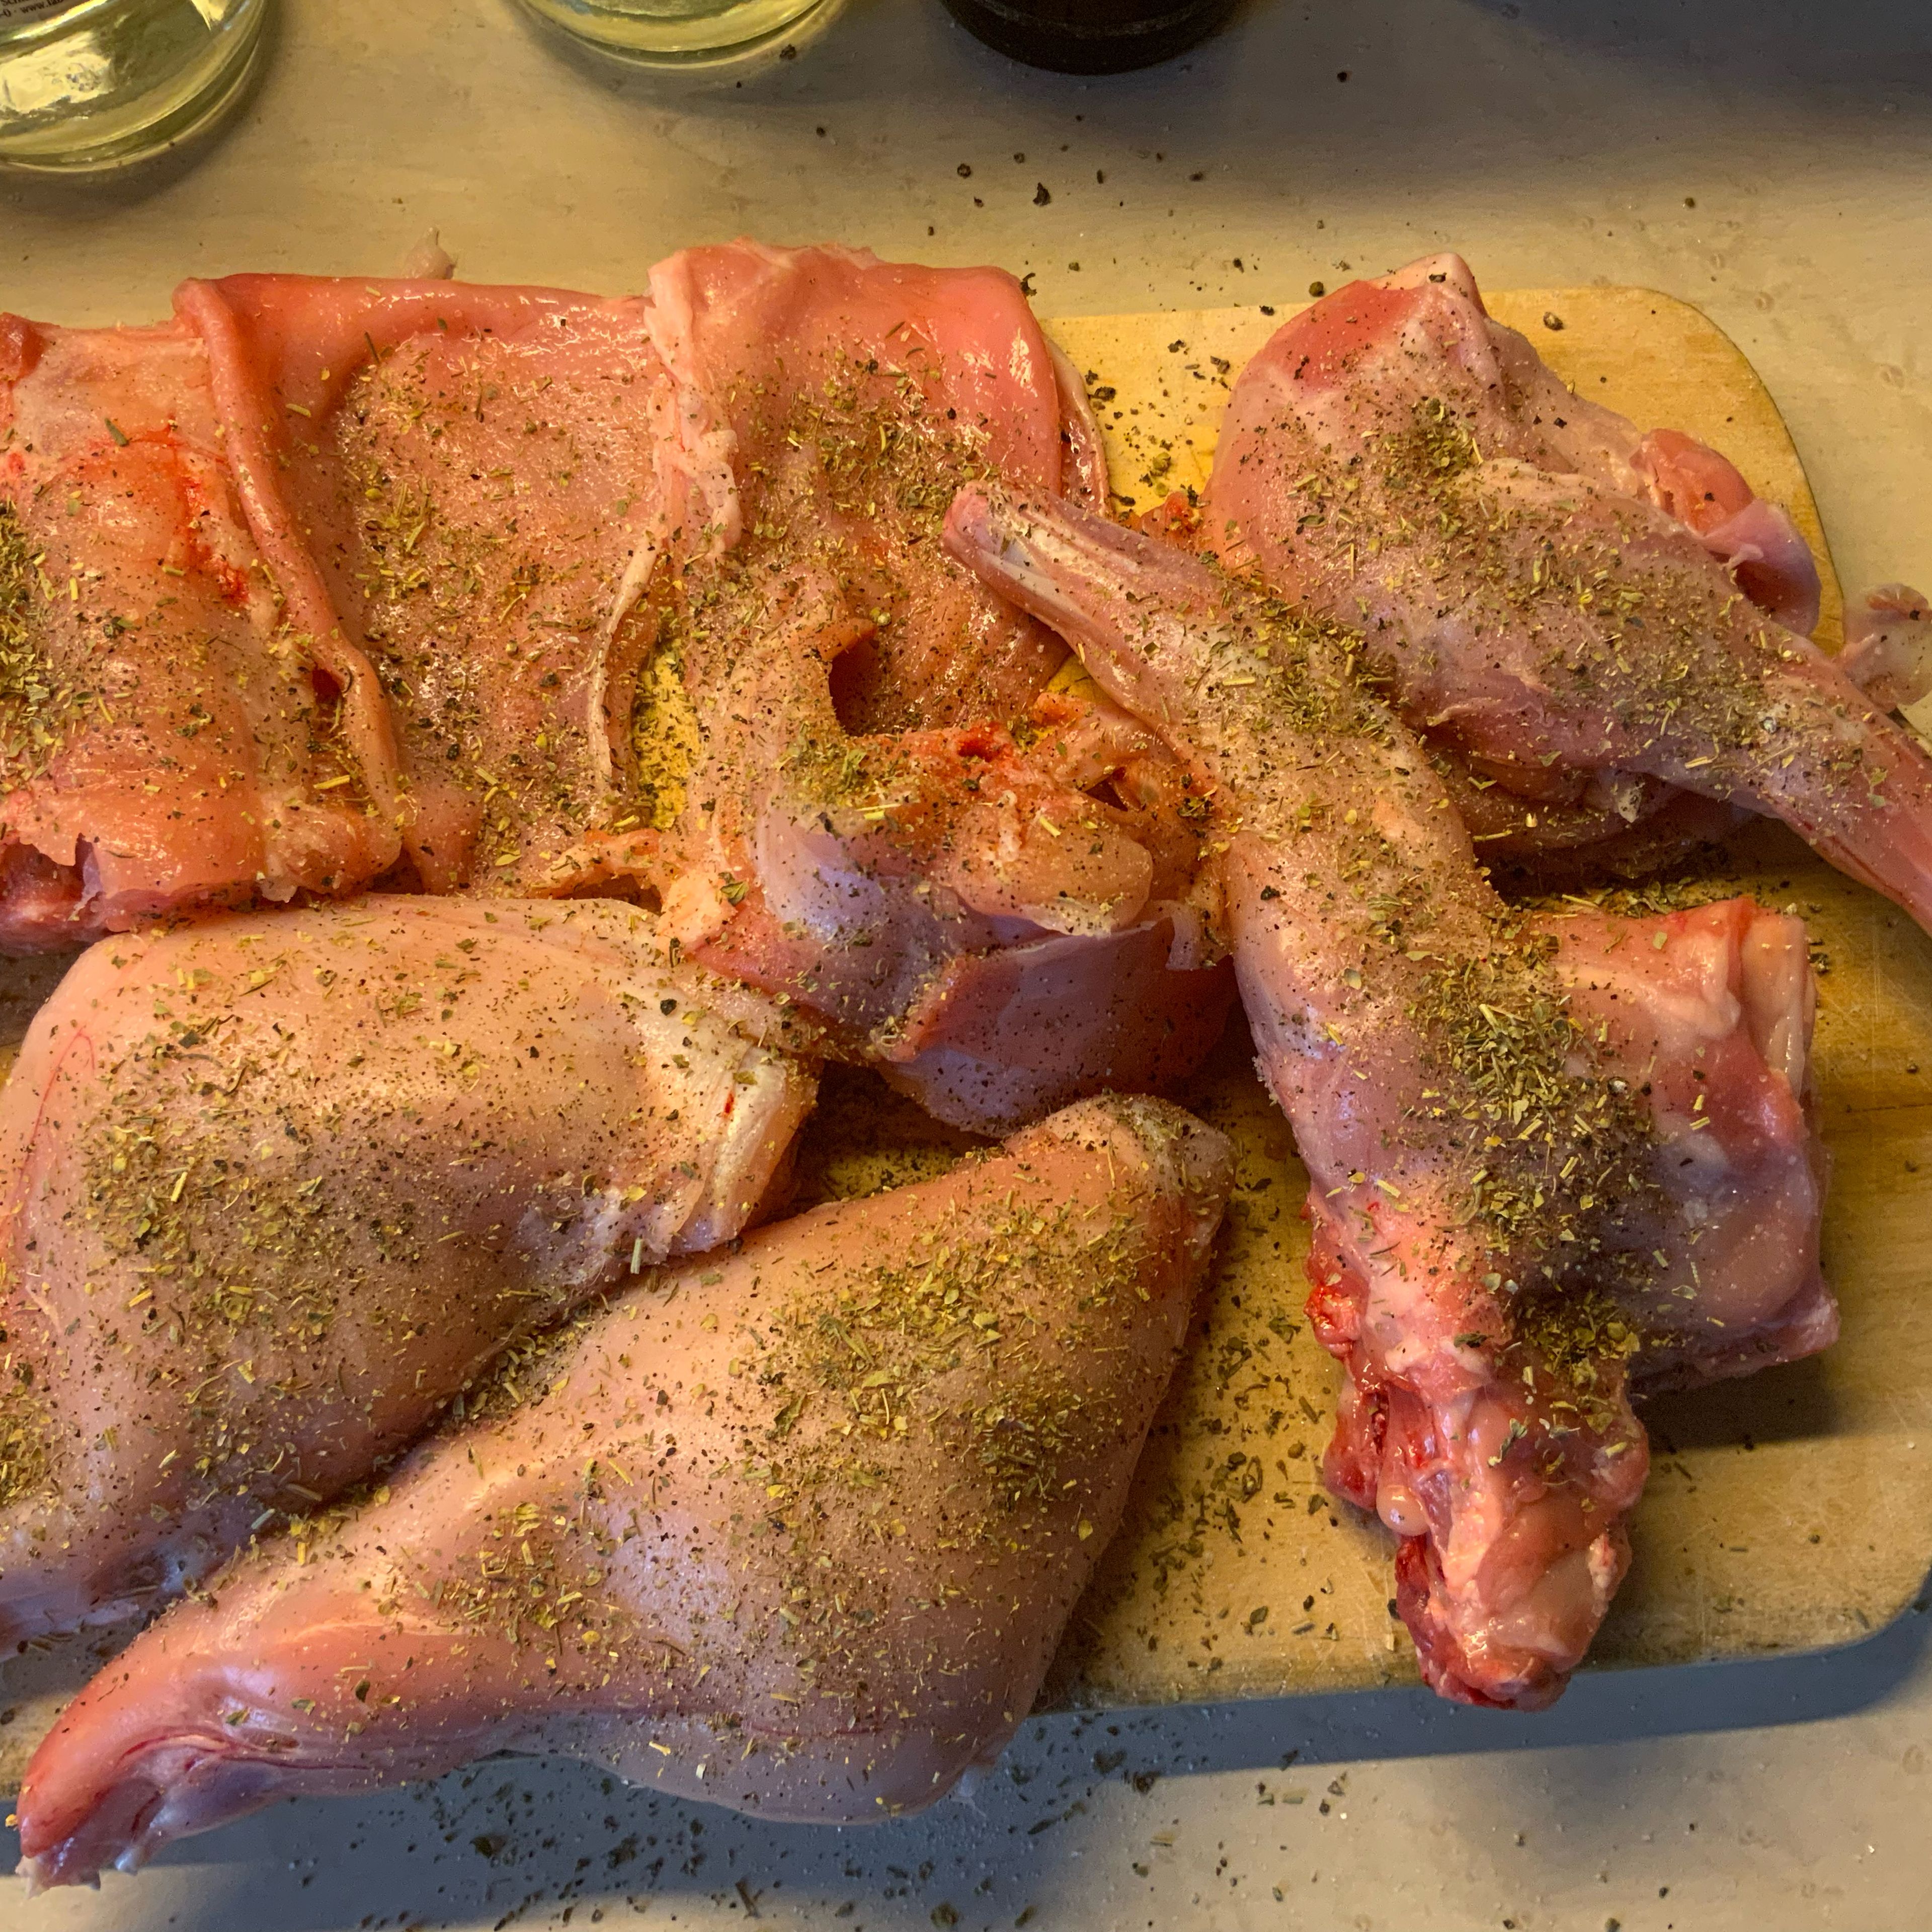 Die Kaninchenteile beidseits mit Salz und Pfeffer und Kräuter der Provence bestellen.